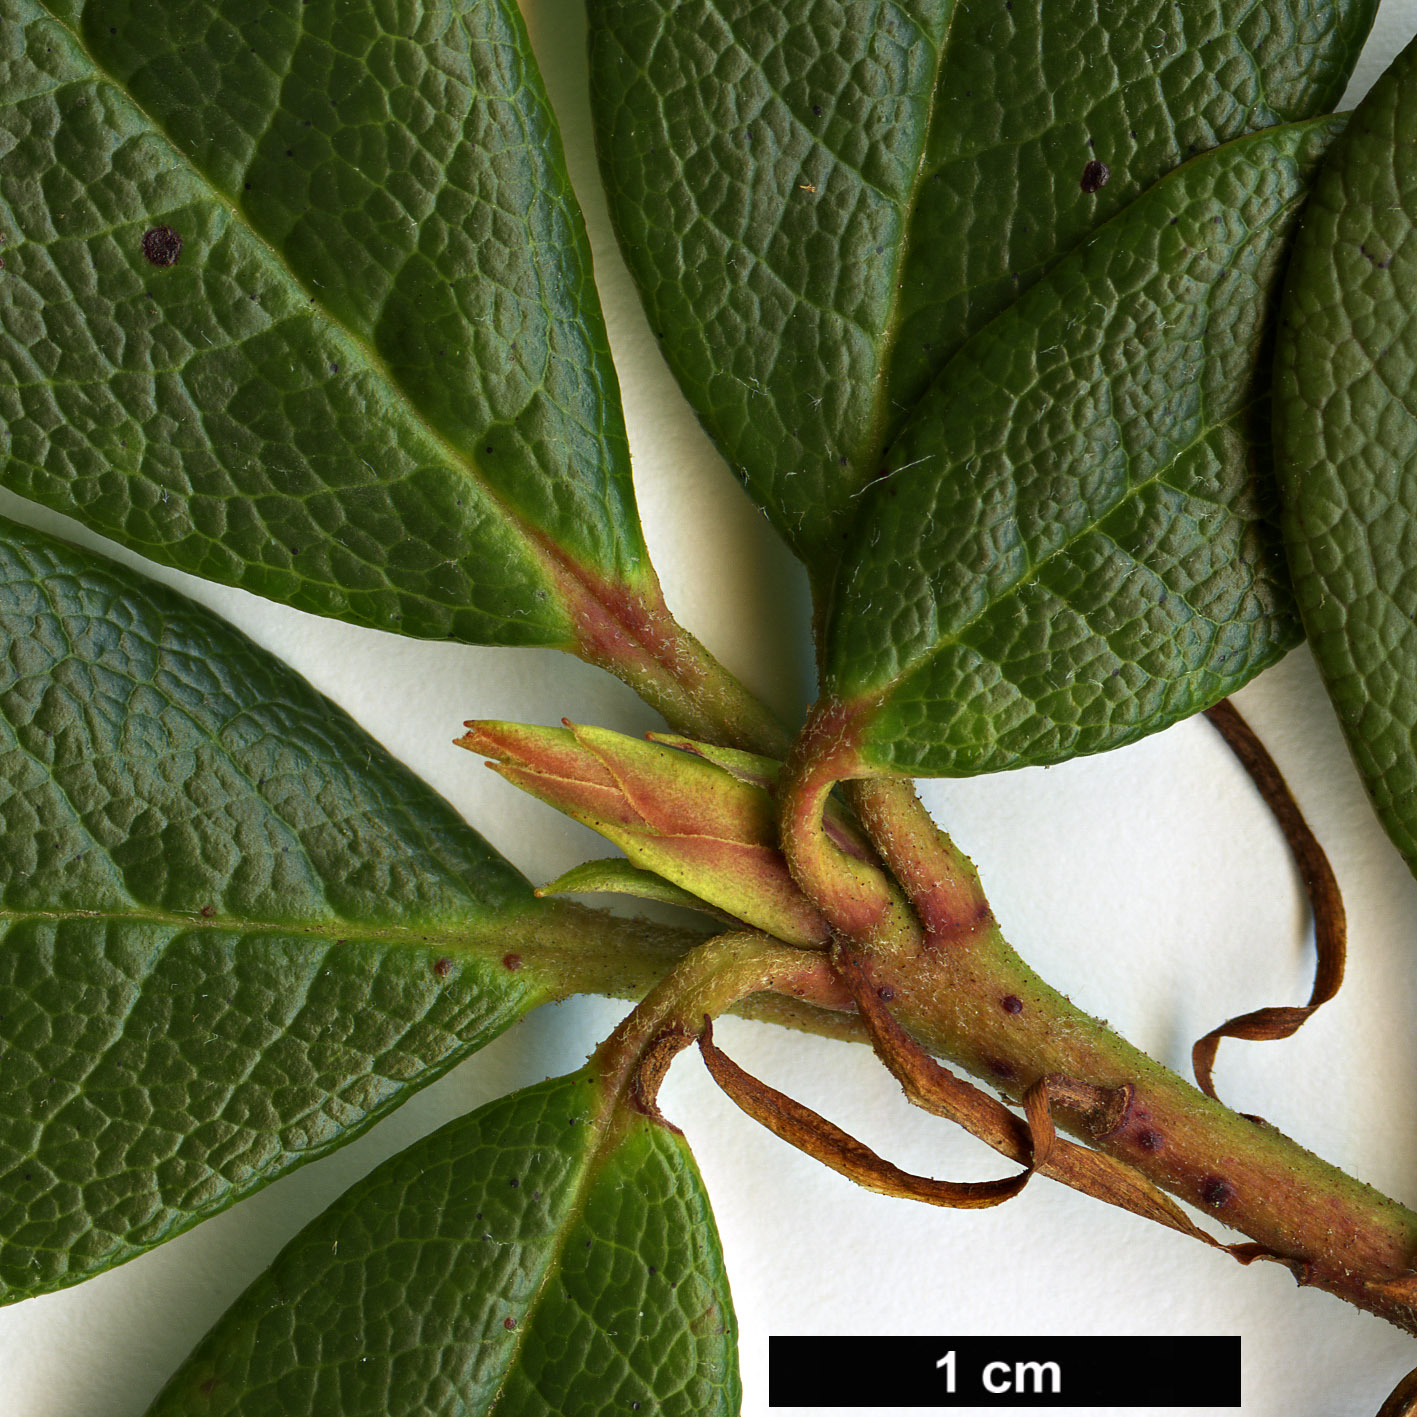 High resolution image: Family: Ericaceae - Genus: Rhododendron - Taxon: chamaethomsonii - SpeciesSub: var. chamaethauma